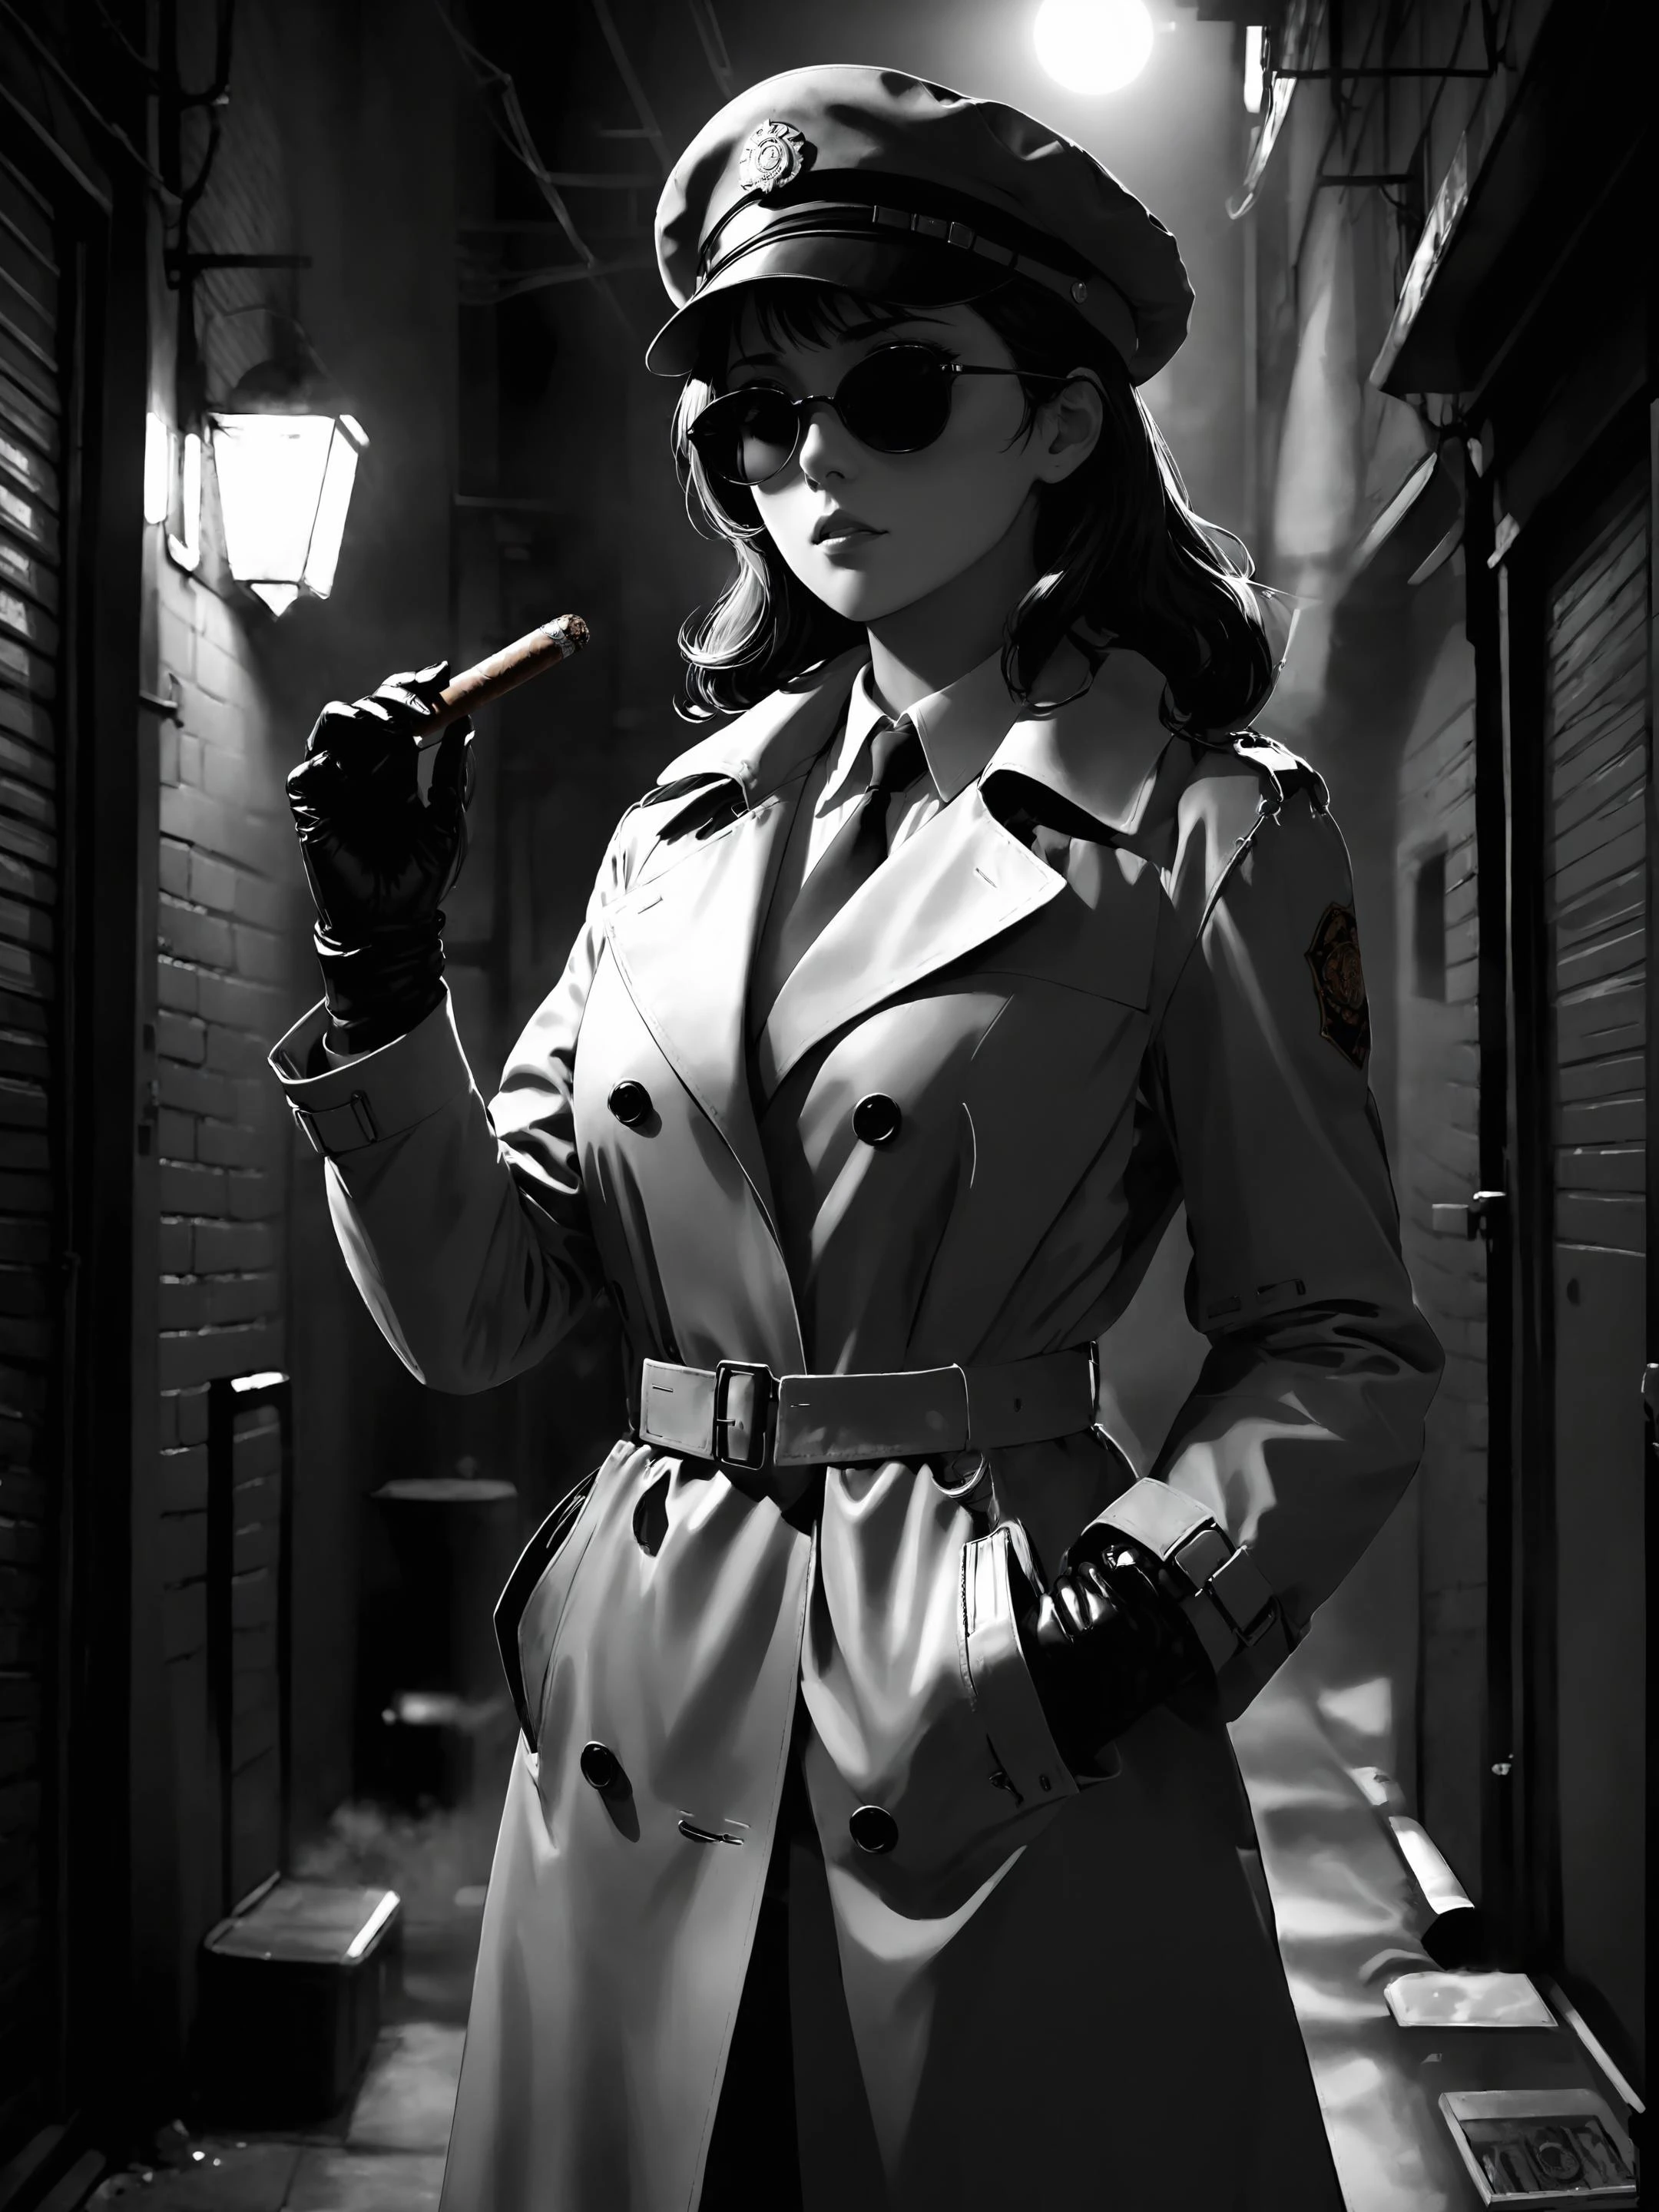 Detektivin im Trenchcoat, Deckel, Sonnenbrille, Lederhandschuhe, in einer Seitengasse stehen und eine Zigarre anzünden, düsterer Film, Schwarz-Weiß-Nachtzeit, dunkler Anime, Ghibli, kohärenter Stil